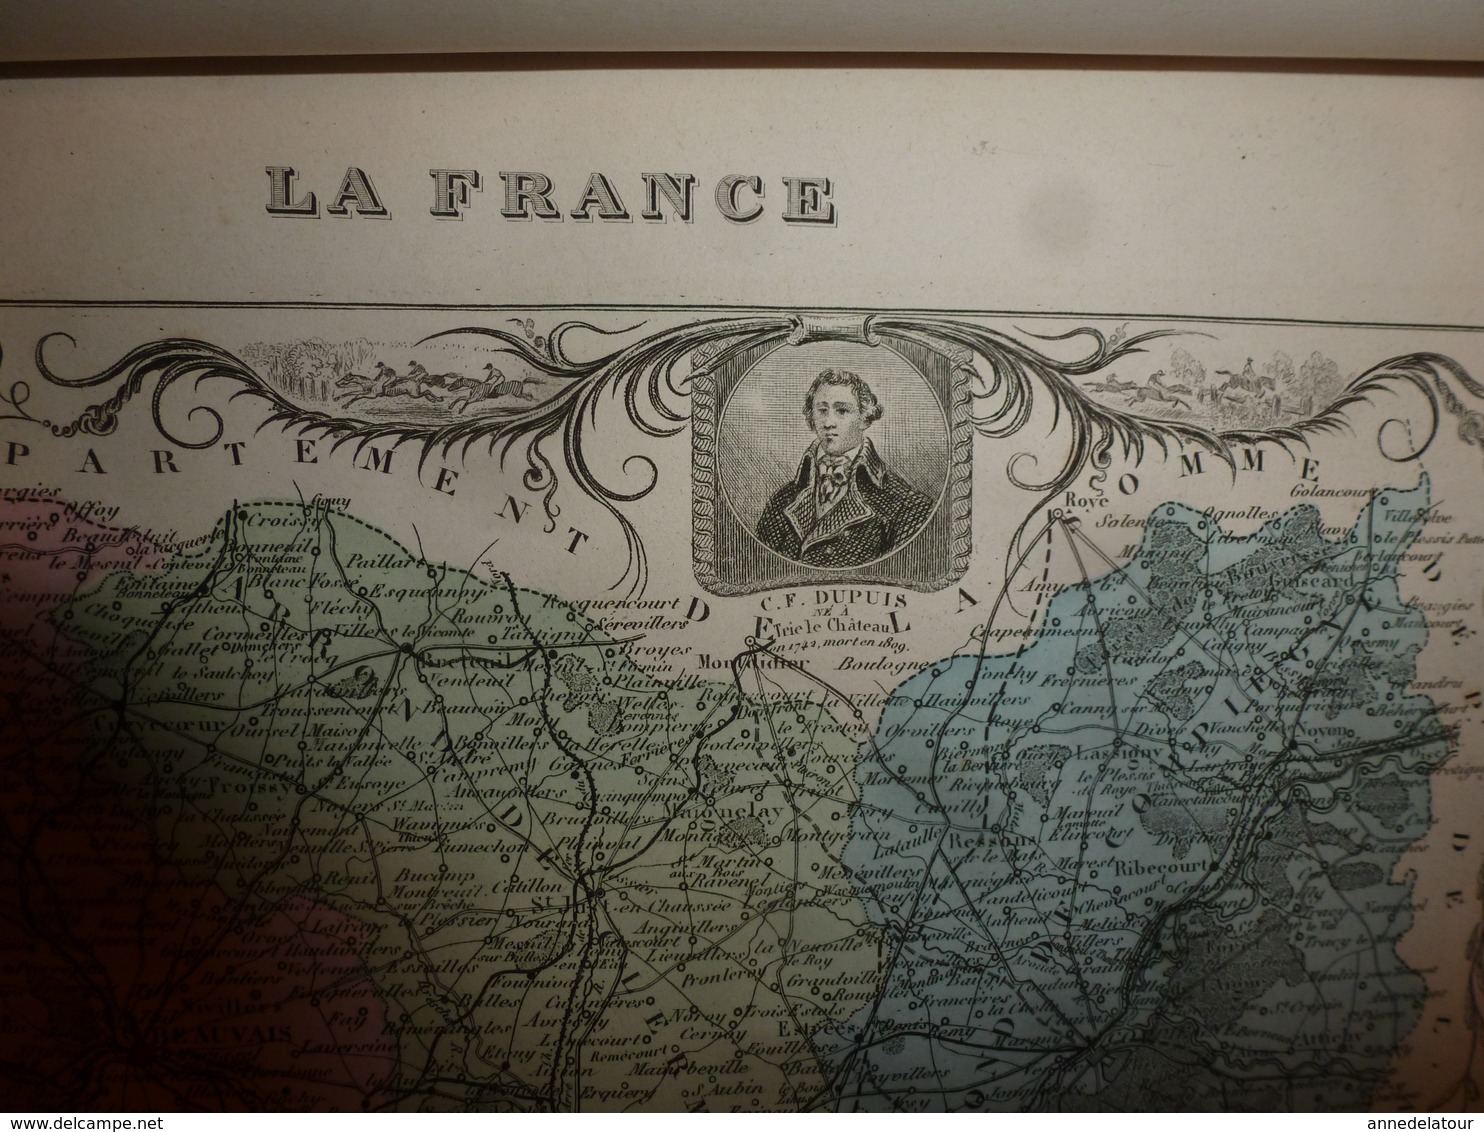 1880 OISE (Beauvais,Clermont,Compiègne,Senlis,etc) Carte Géographique-Descriptive:grav.taille douce-Migeon,géographe